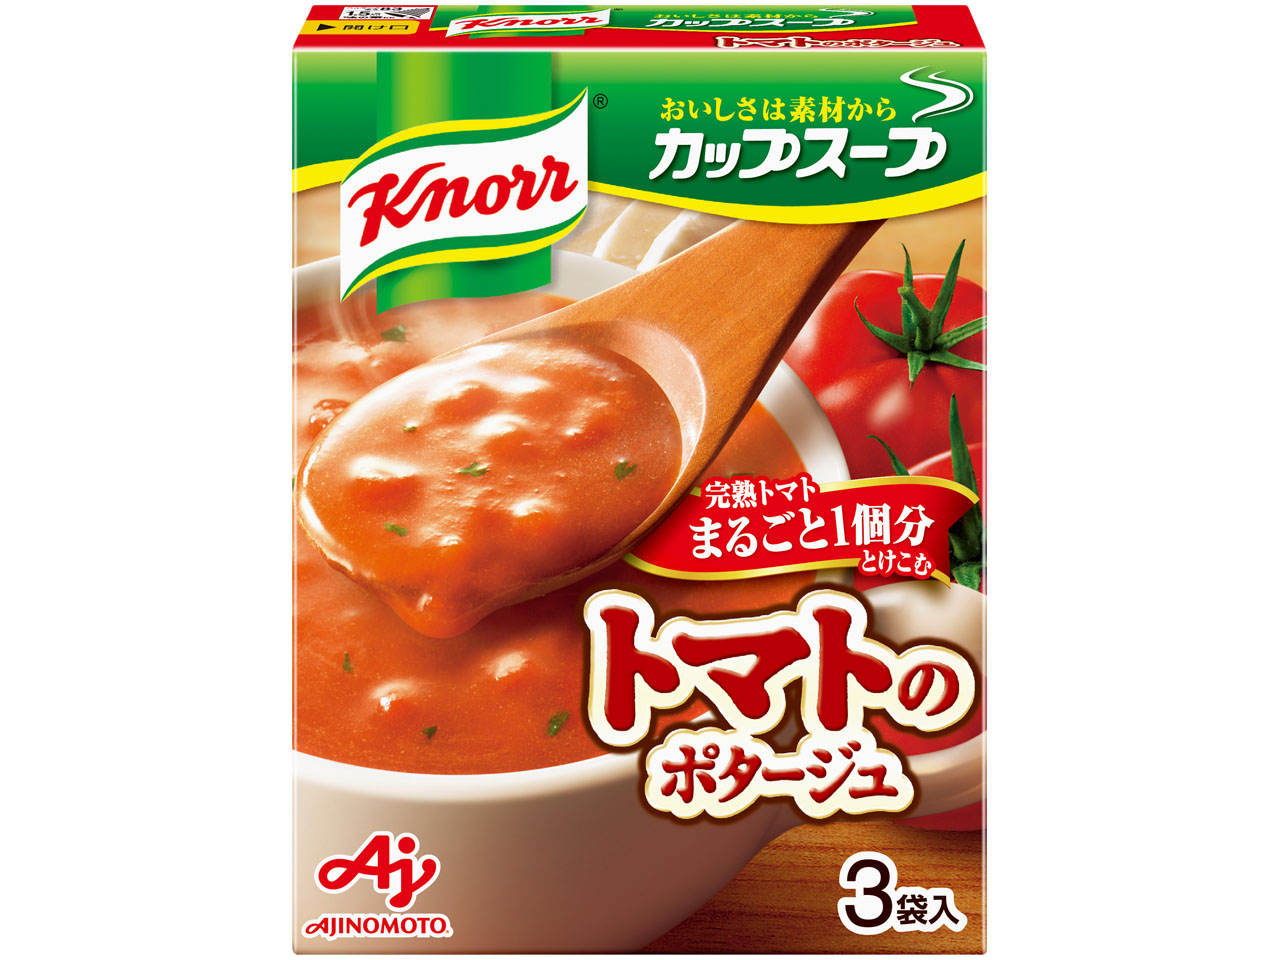 「クノール カップスープ」完熟トマトまるごと1個分使ったポタージュ